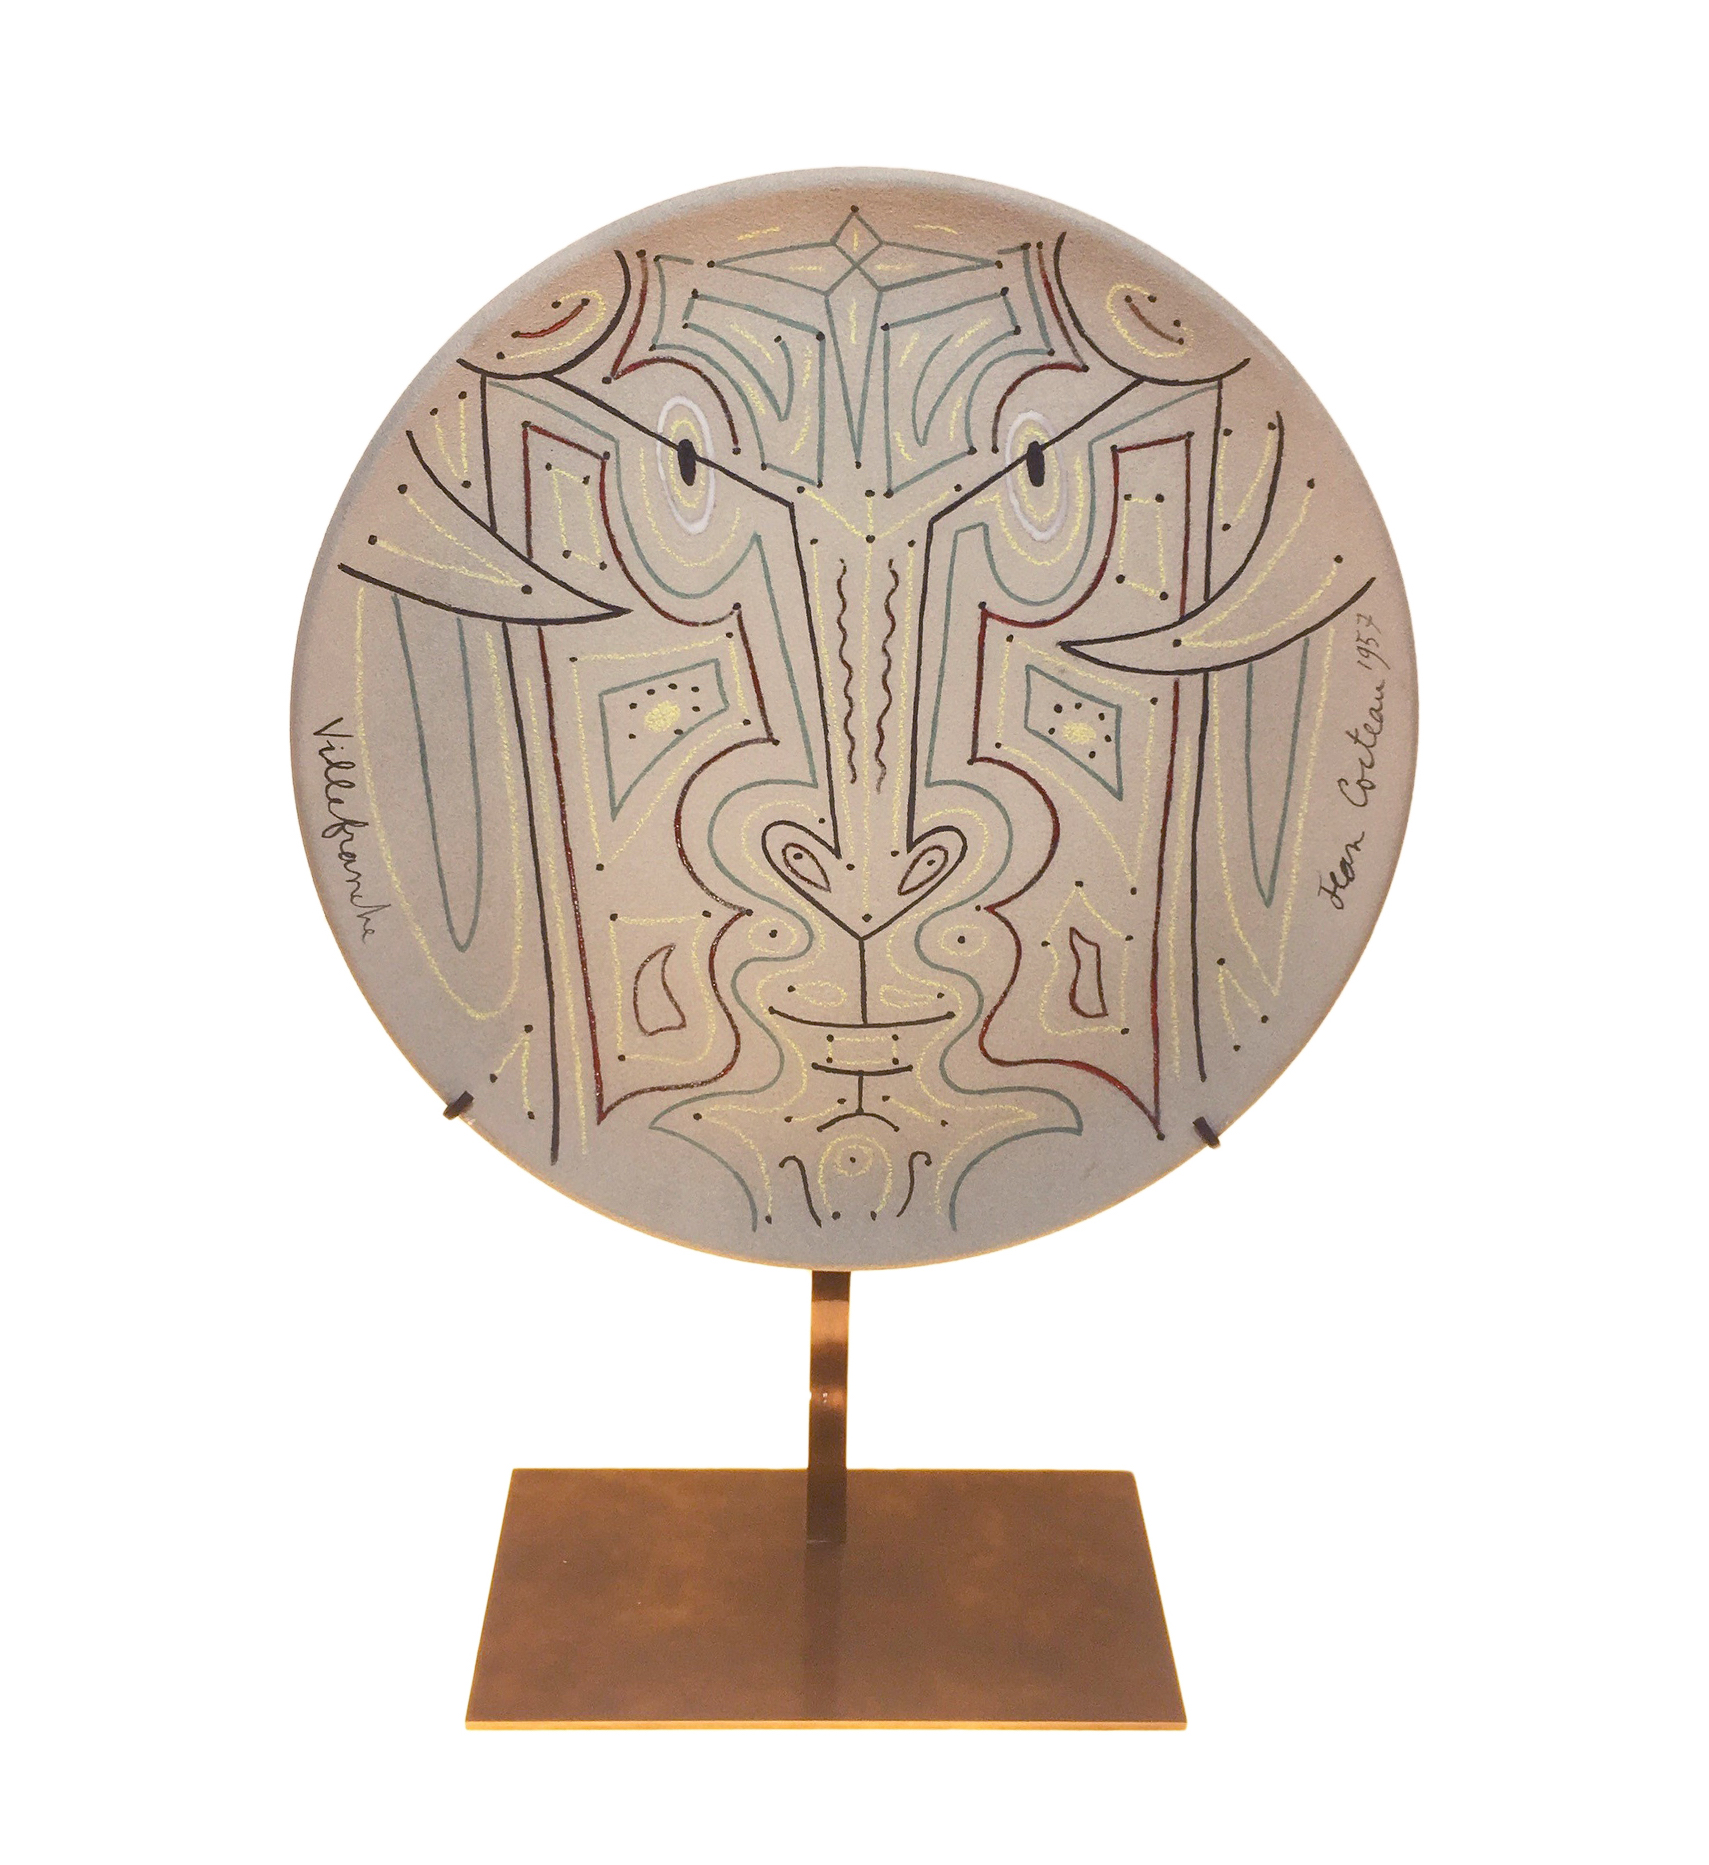 Assiette de Cocteau sur le thème du Minotaure à décor symétrique sur support laiton finition mouchetée patine cuivrée sur fond blanc